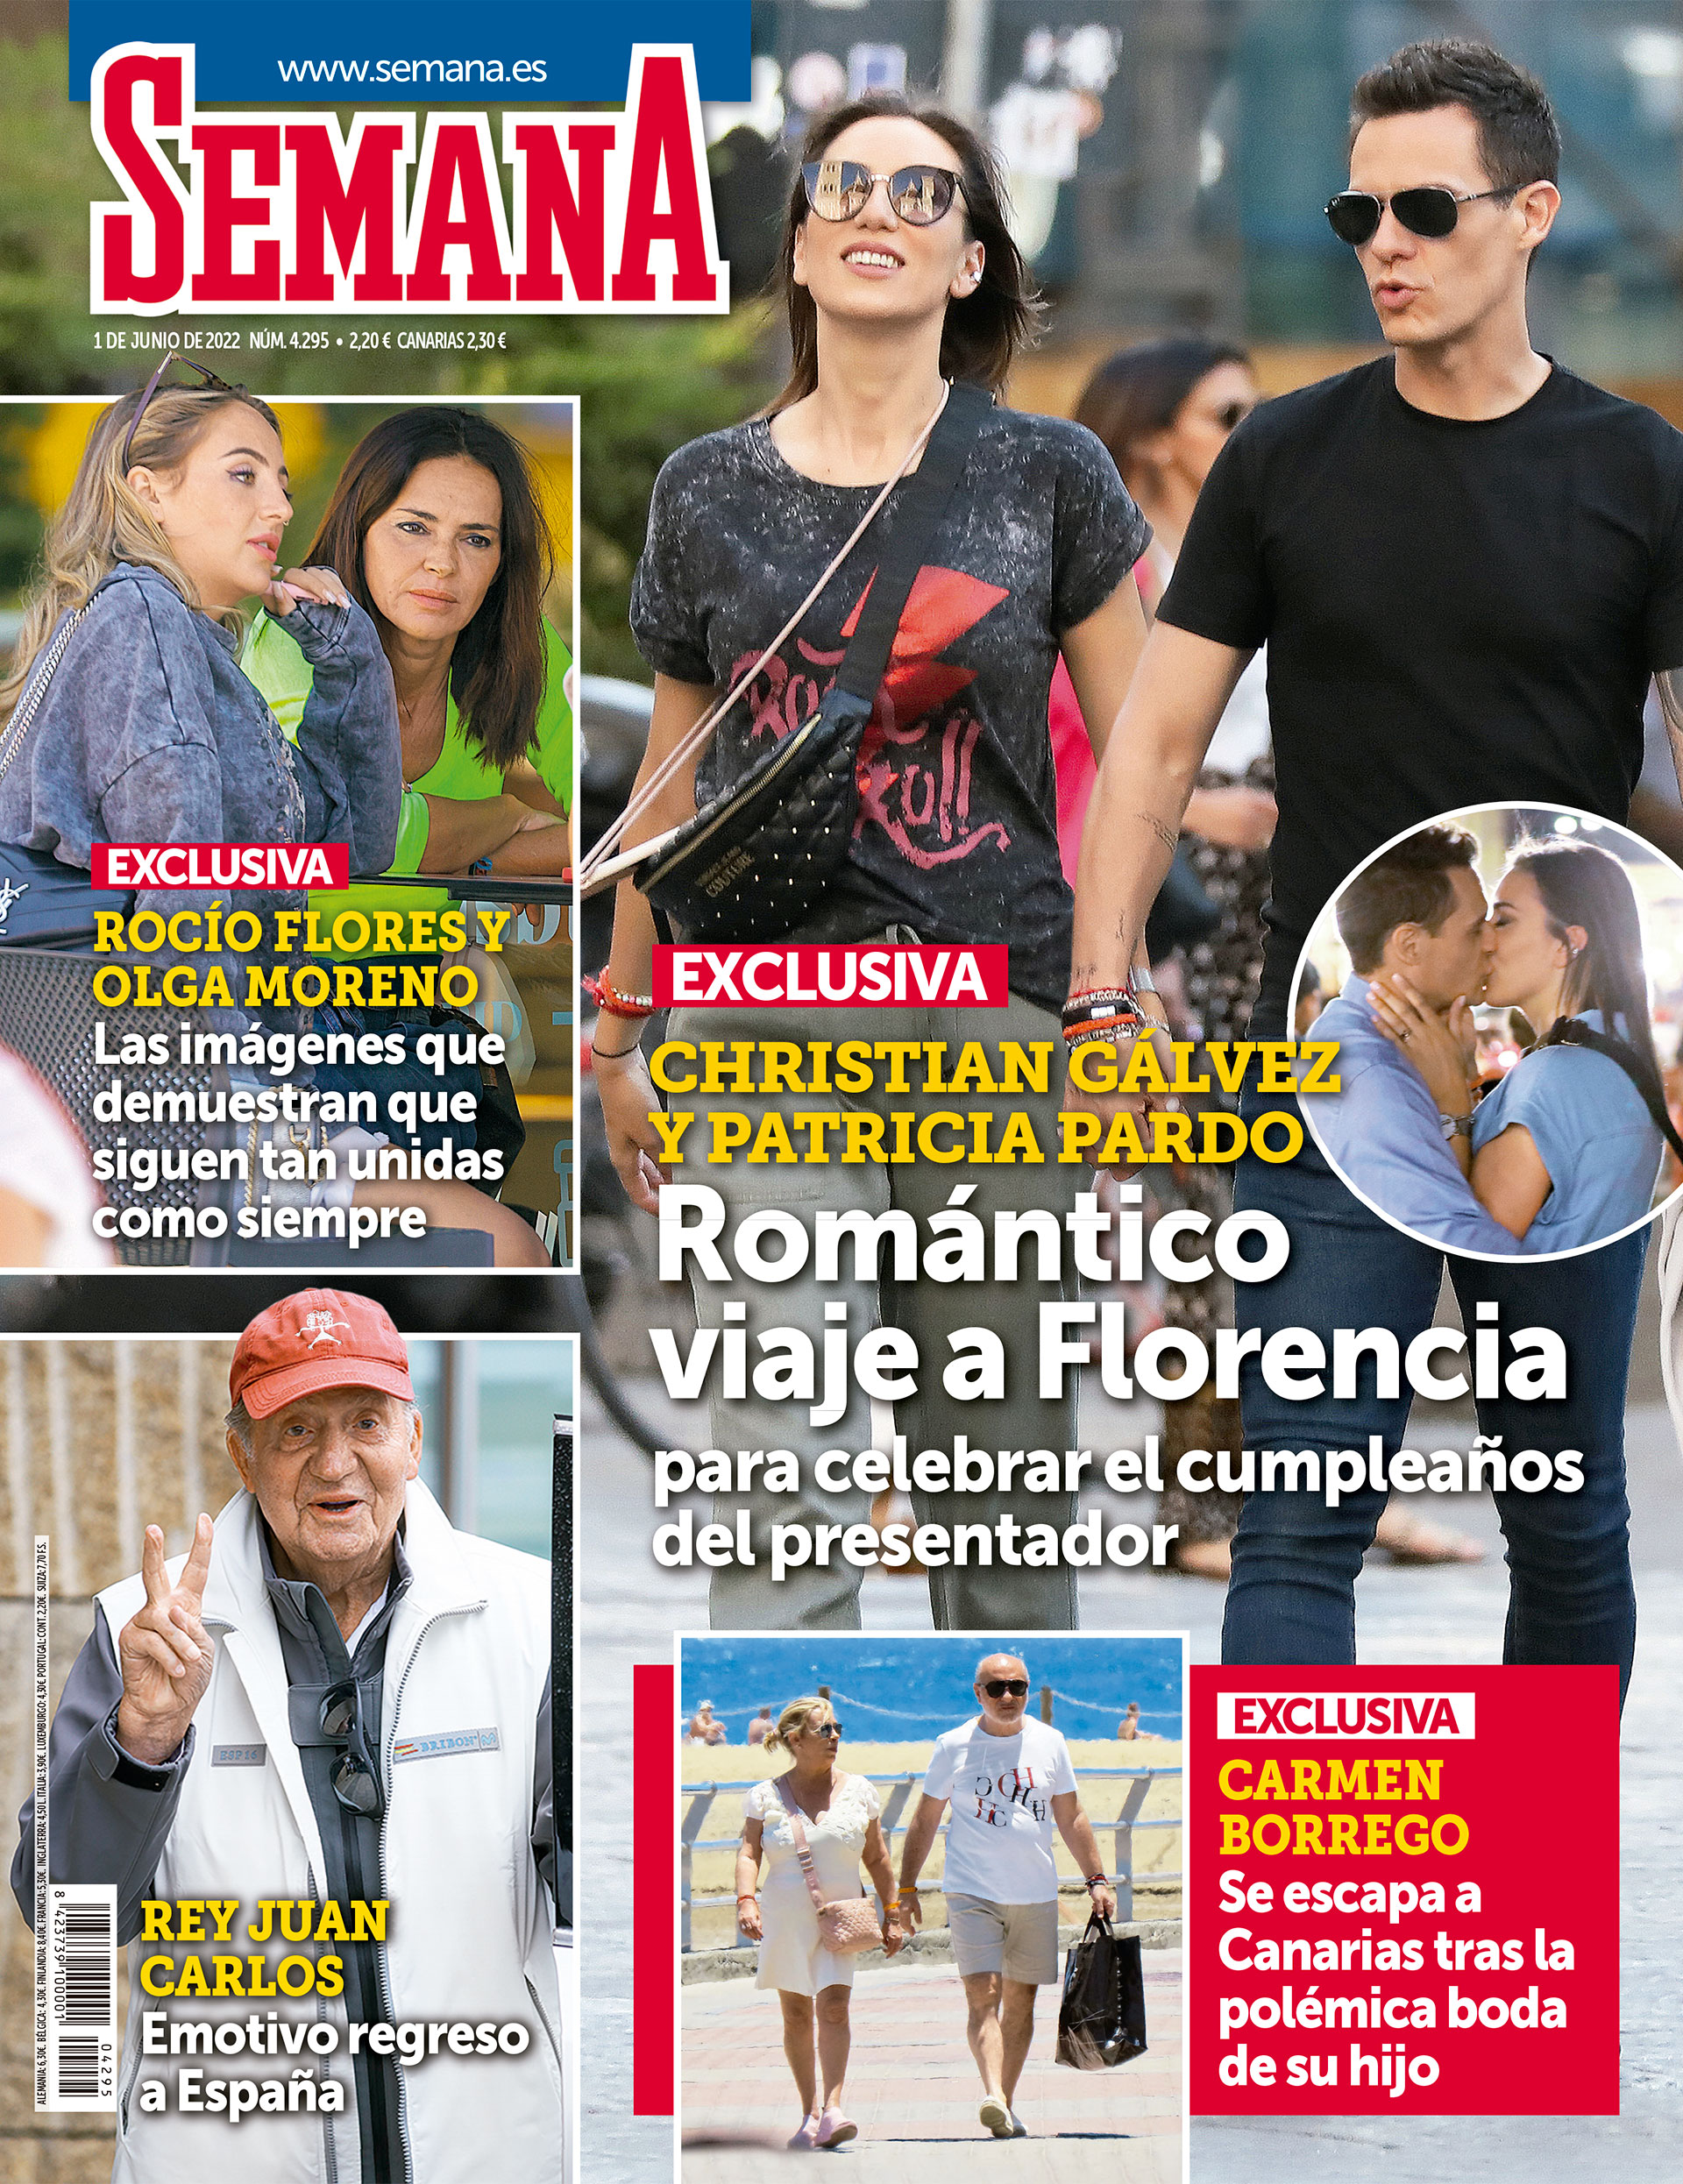 Carmen Borrego se escapa a Canarias tras la polémica boda de su hijo